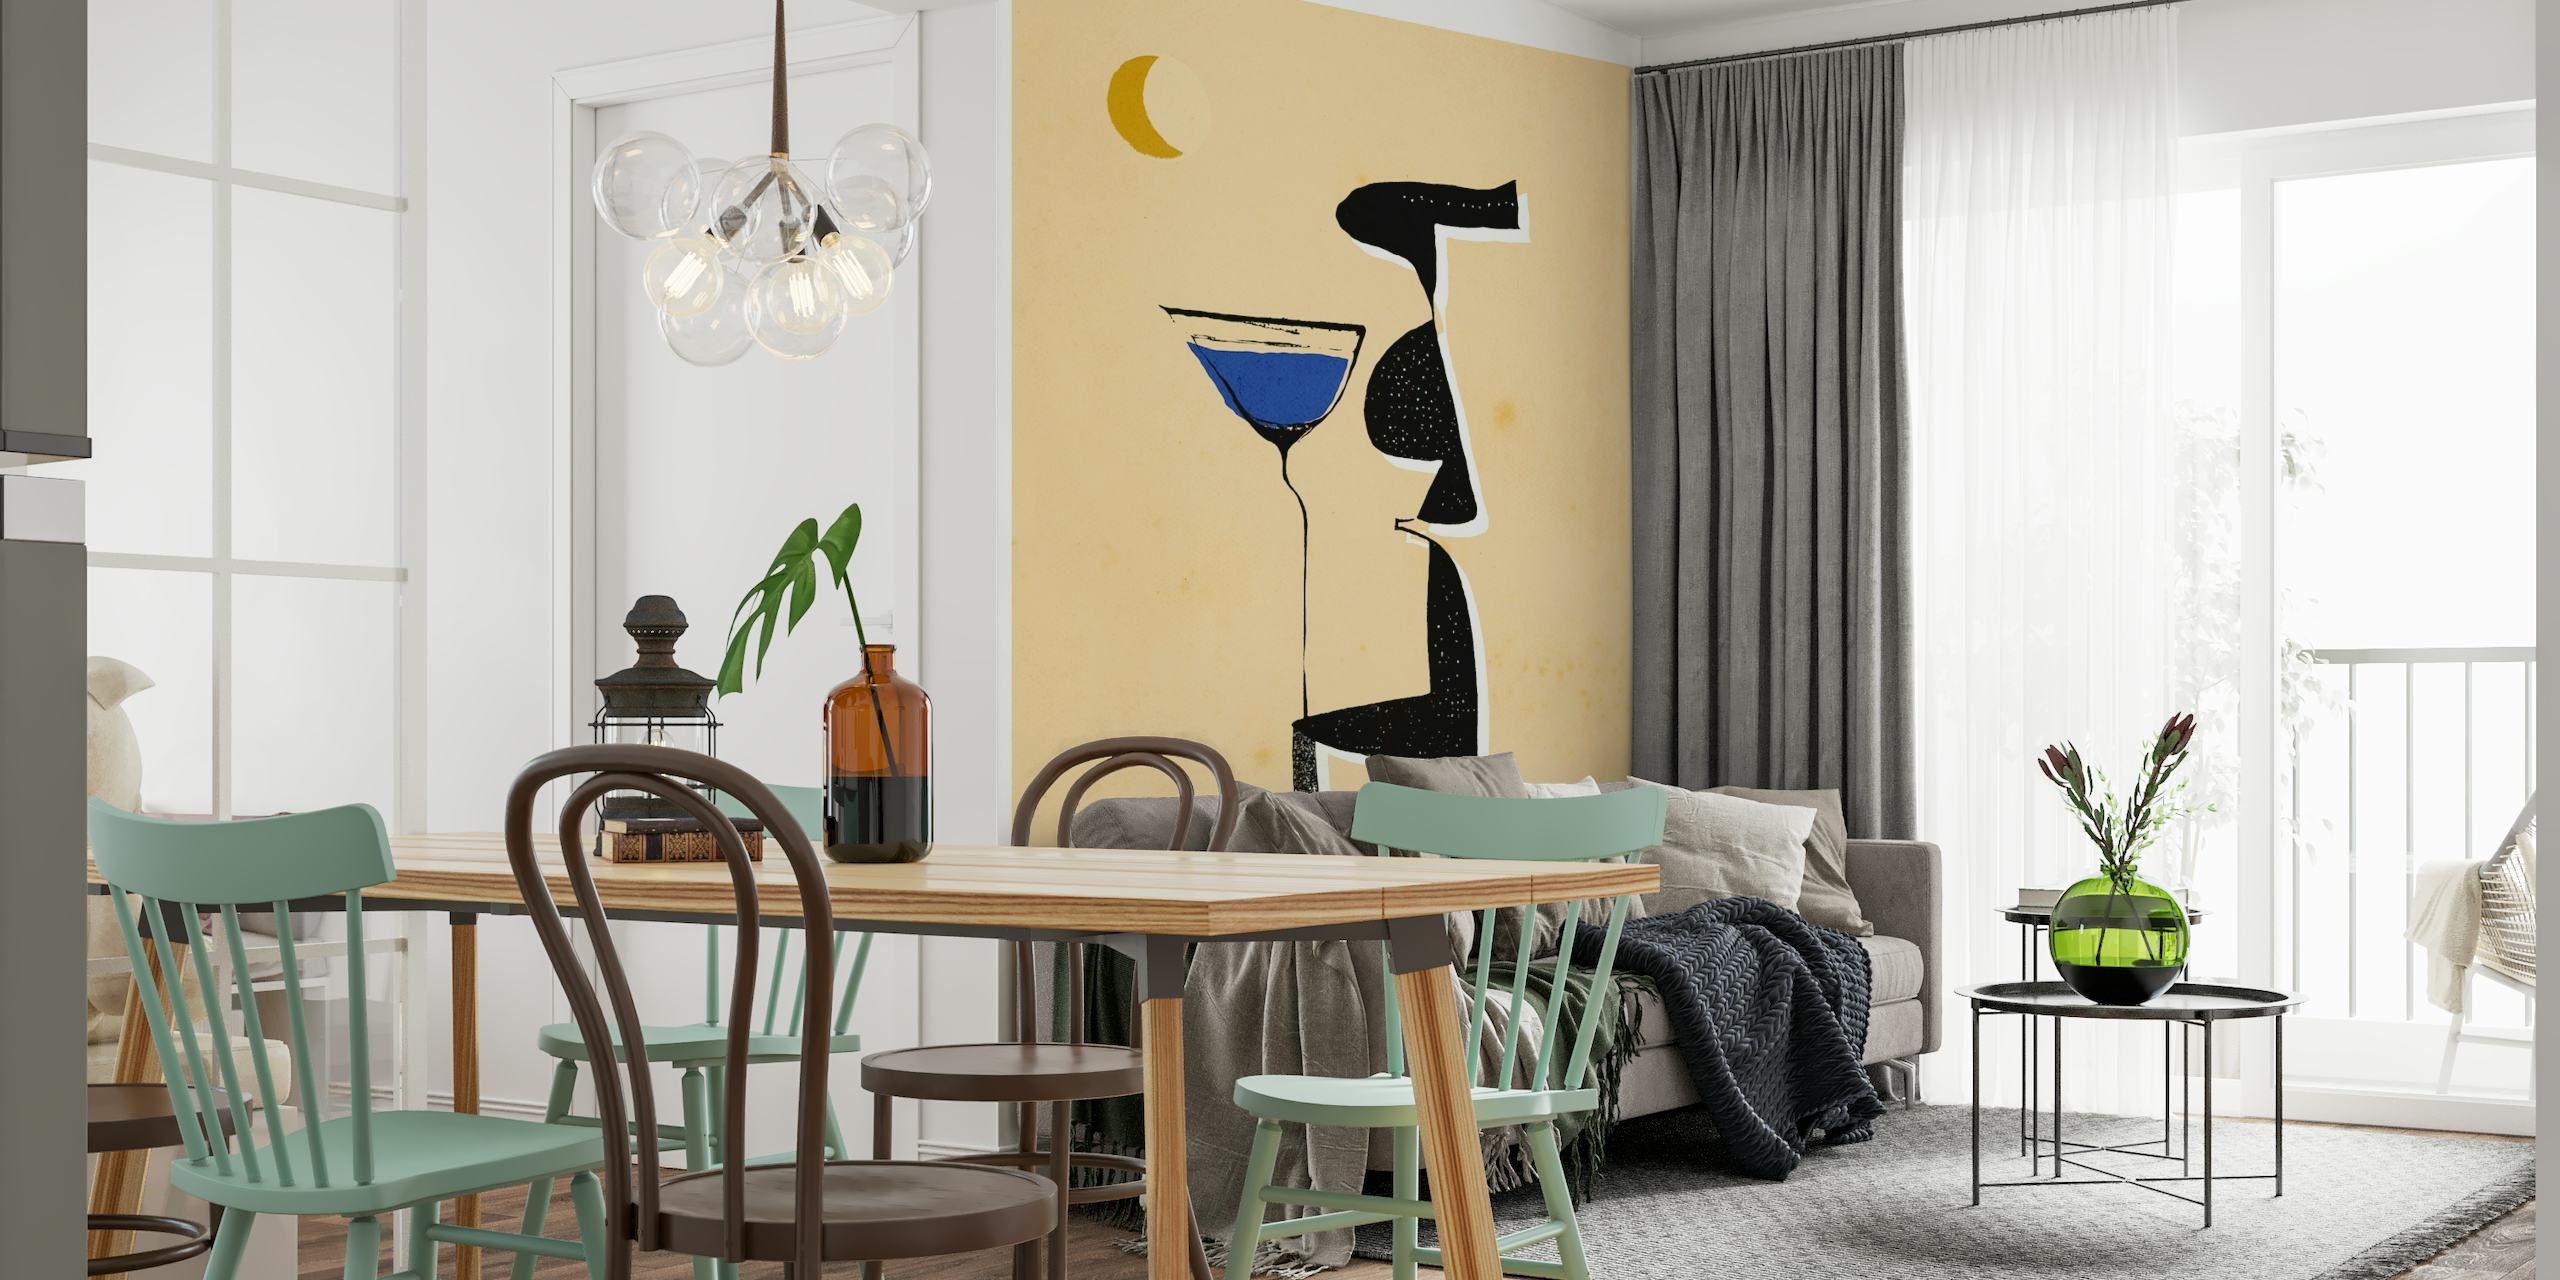 Fotomural vinílico de parede de figura abstrata Le Monsieur com tons quentes, detalhes em azul e lua crescente.